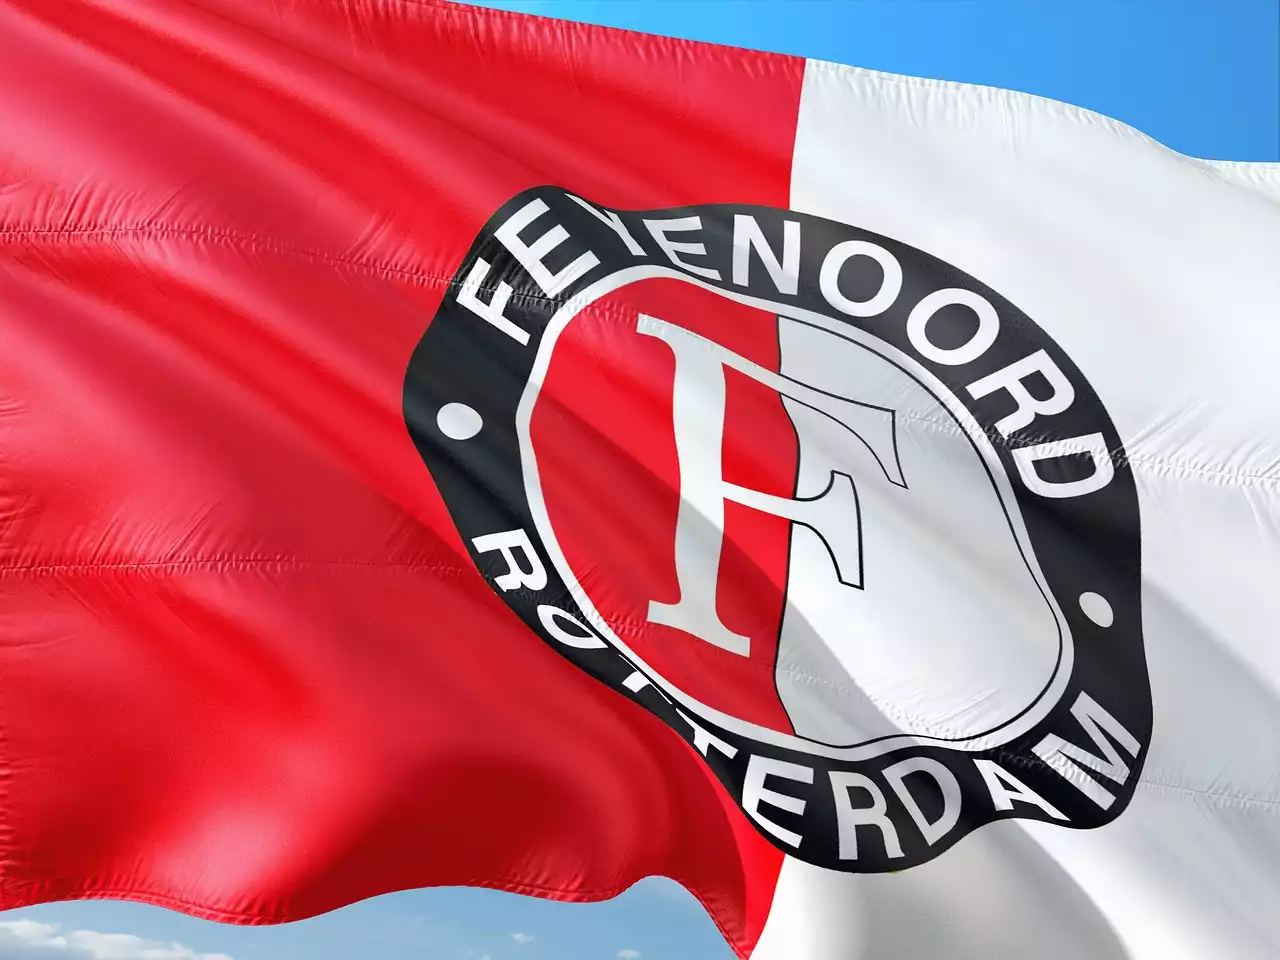 הצלחה אגדית: 10 המועדונים המובילים שעיצבו את העבר המפואר של ה-Eredivisie